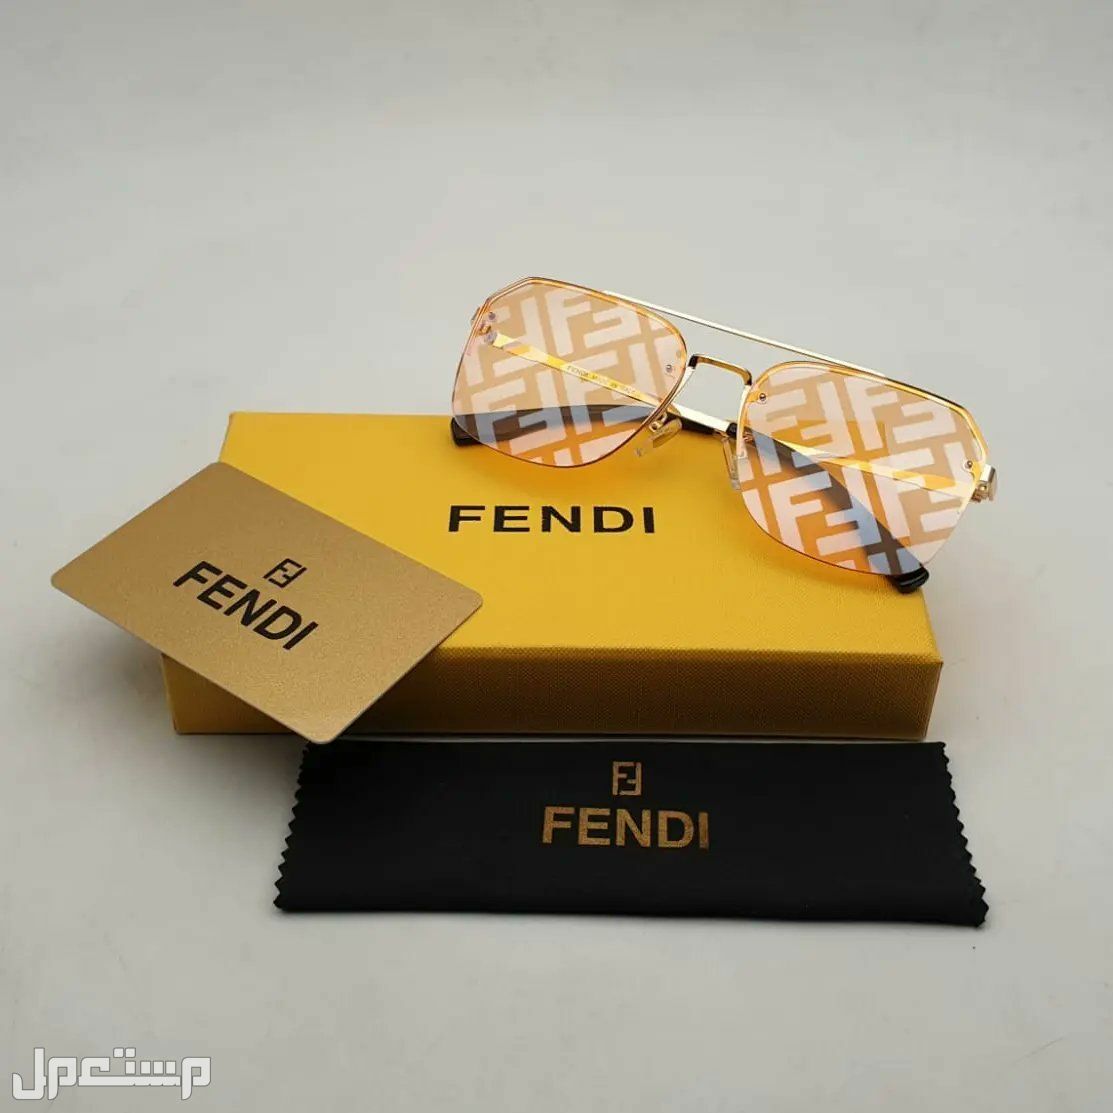 نظارات فندي Fendi النسائية تعرف على مواصفاتها وأسعارها كاملة في تونس فندي مميزة